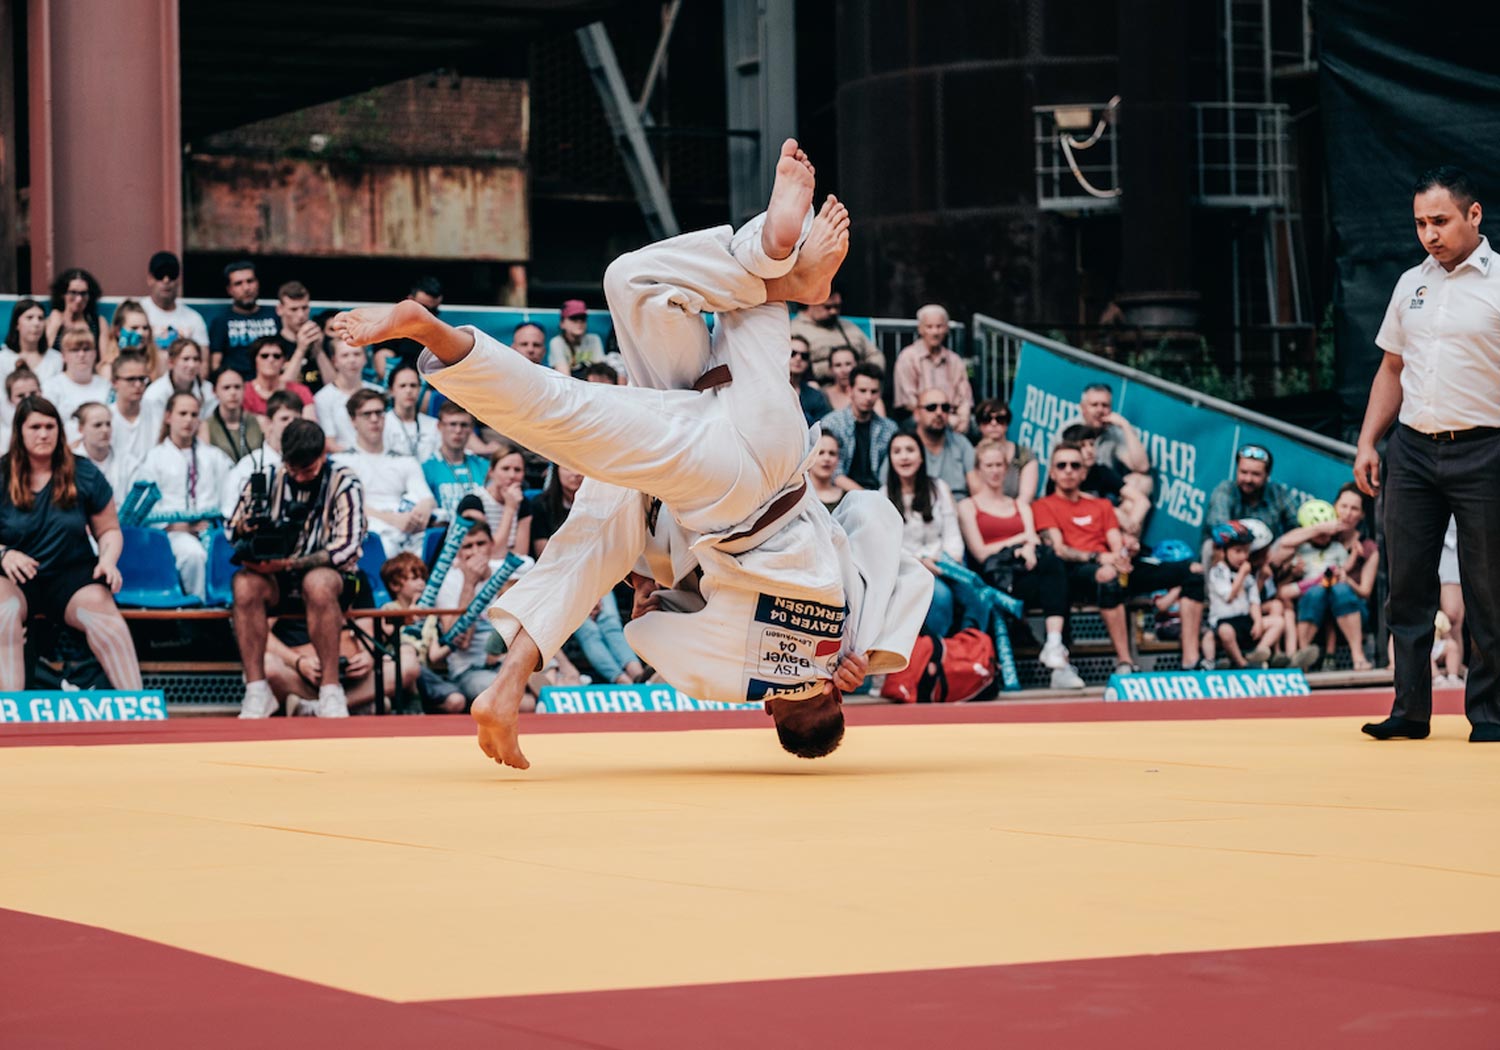 Ruhr Games 19, Judo